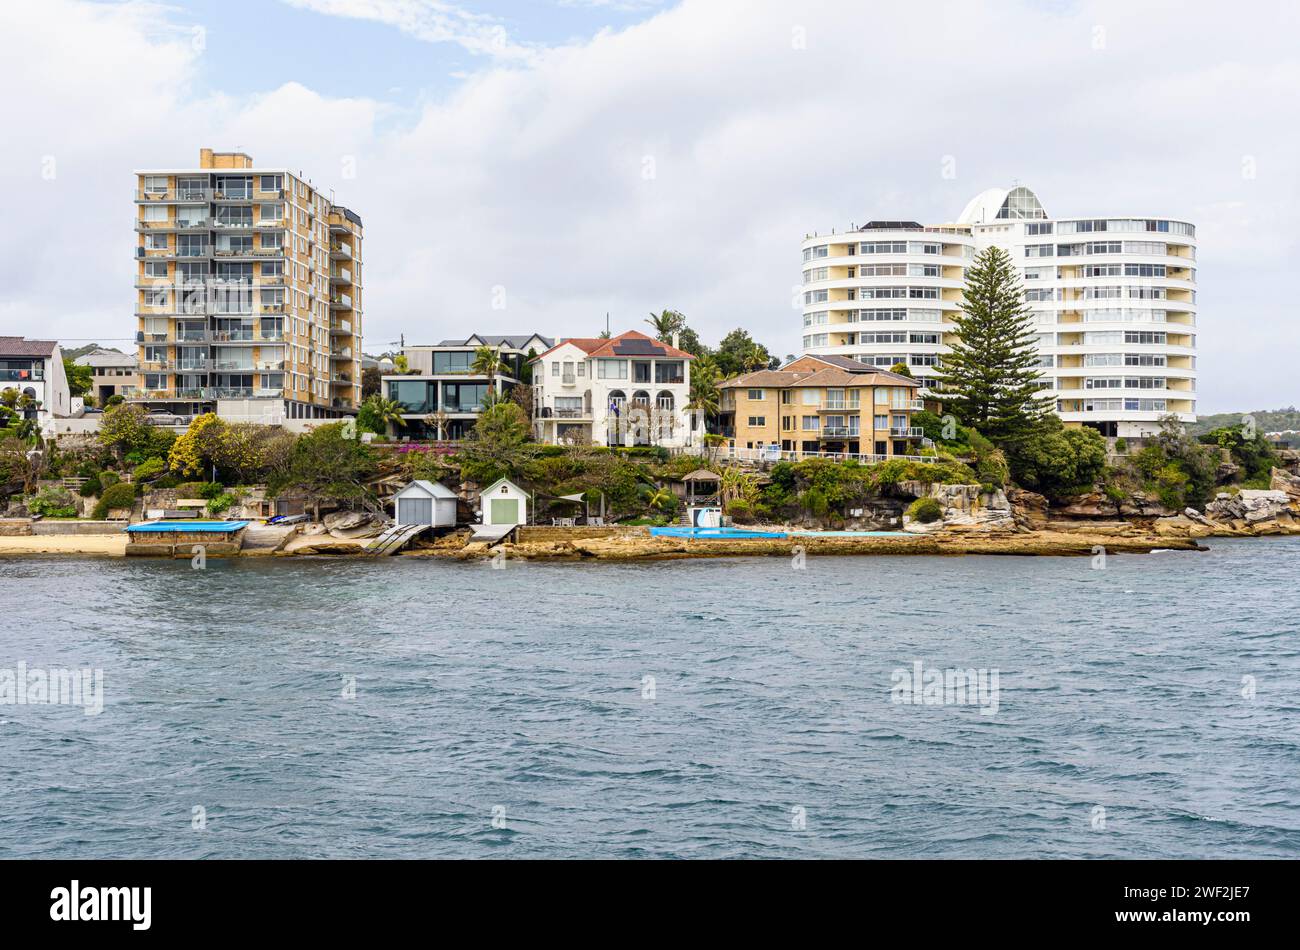 Baracche, case e appartamenti lungo la costa a Smedley's Point, Manly, Sydney, Australia Foto Stock